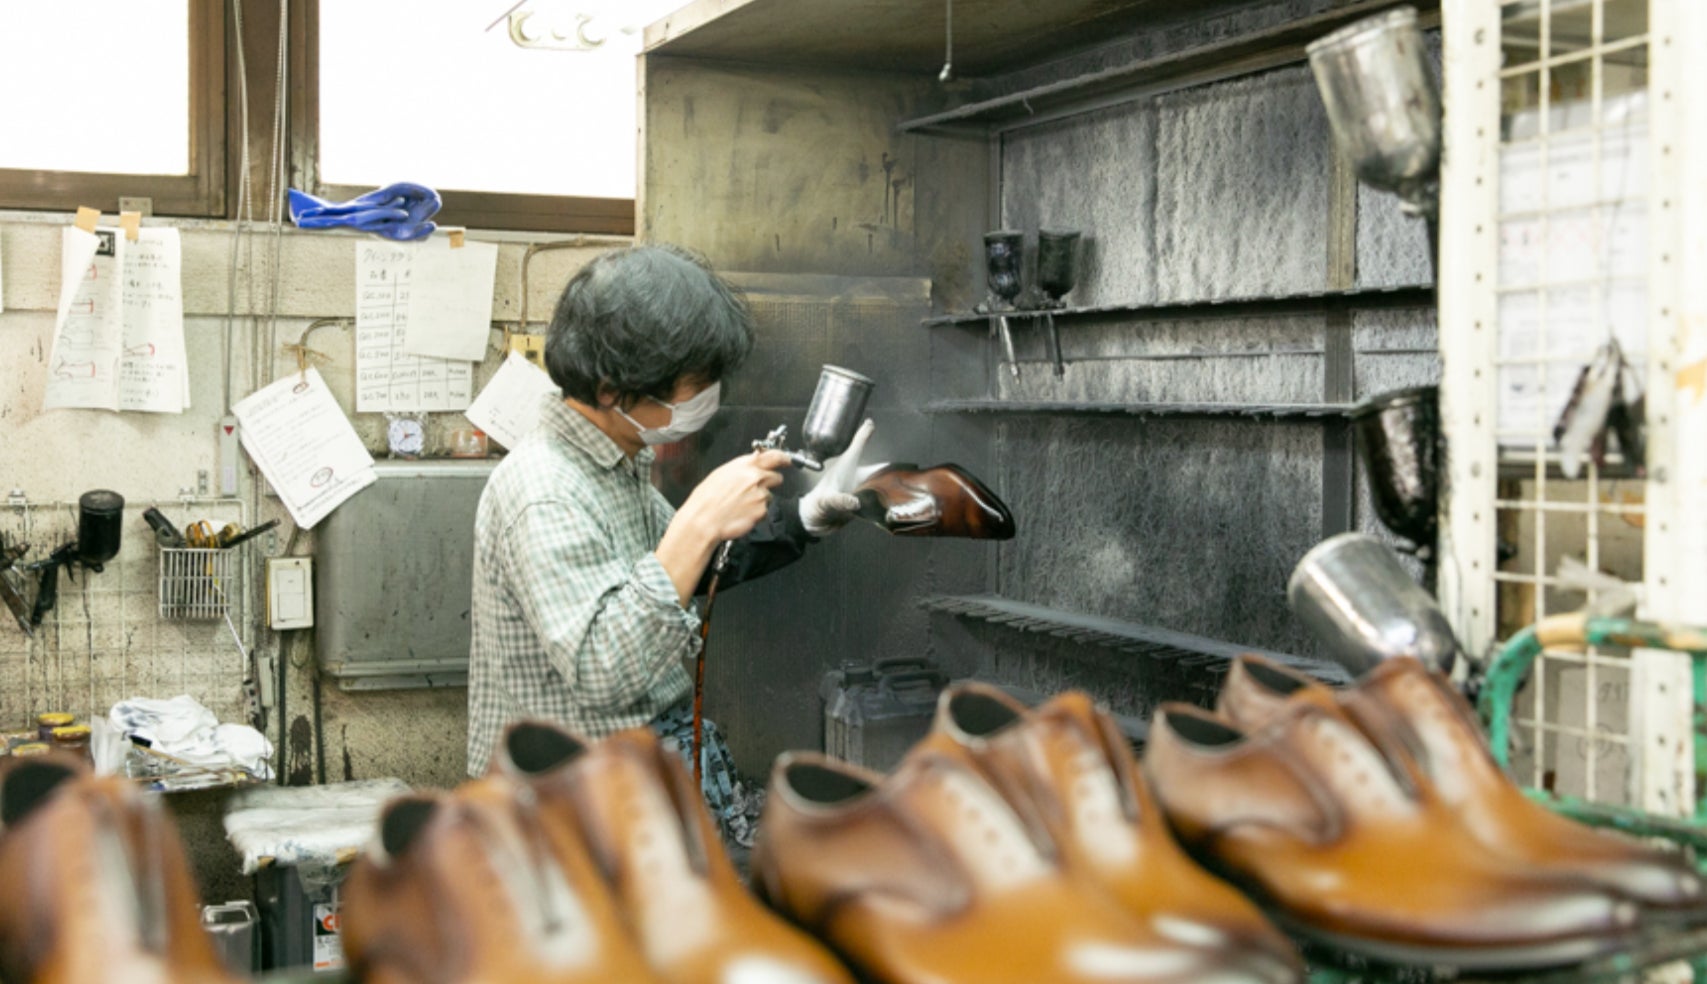 昭和40年代からいち早く自社ブランドを立ち上げた老舗の靴工房。現場の声を活かす企画力と、60年培われた職人...